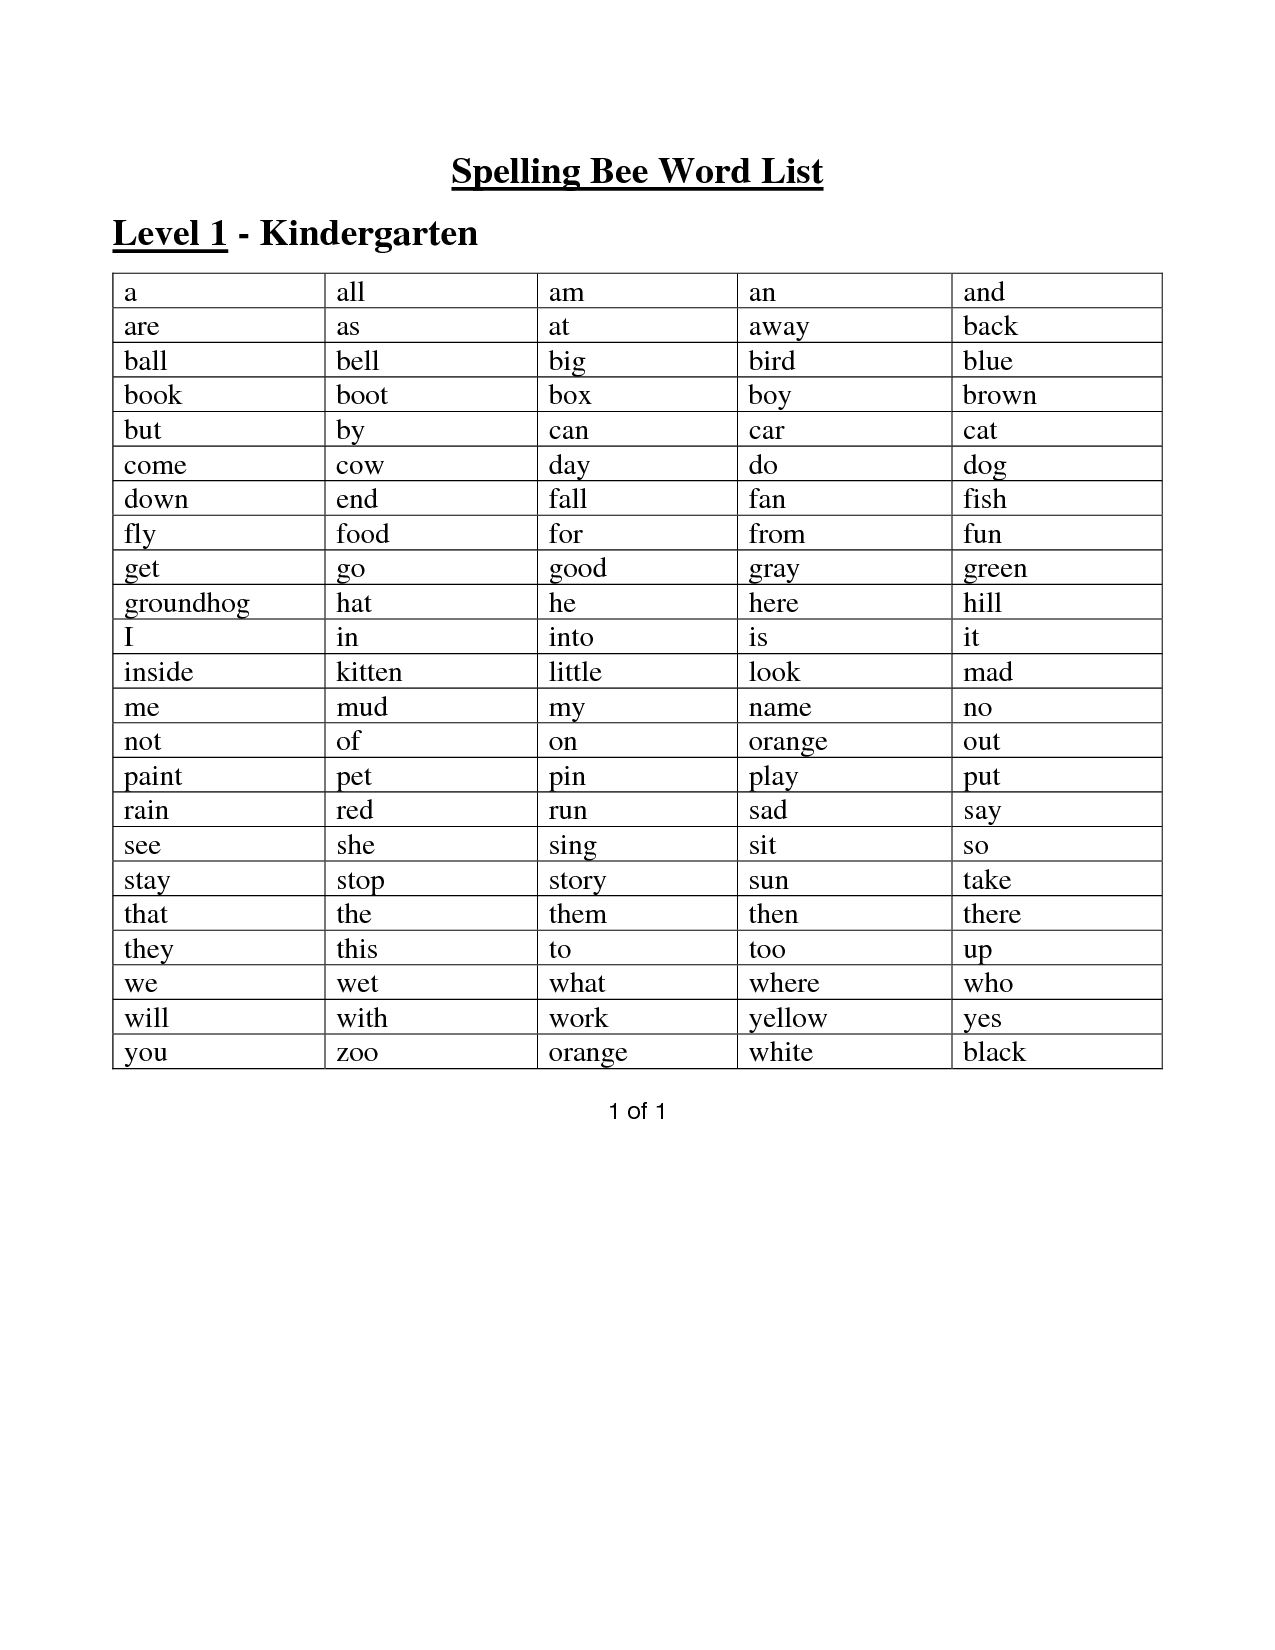 Kindergarten Spelling Words List Image